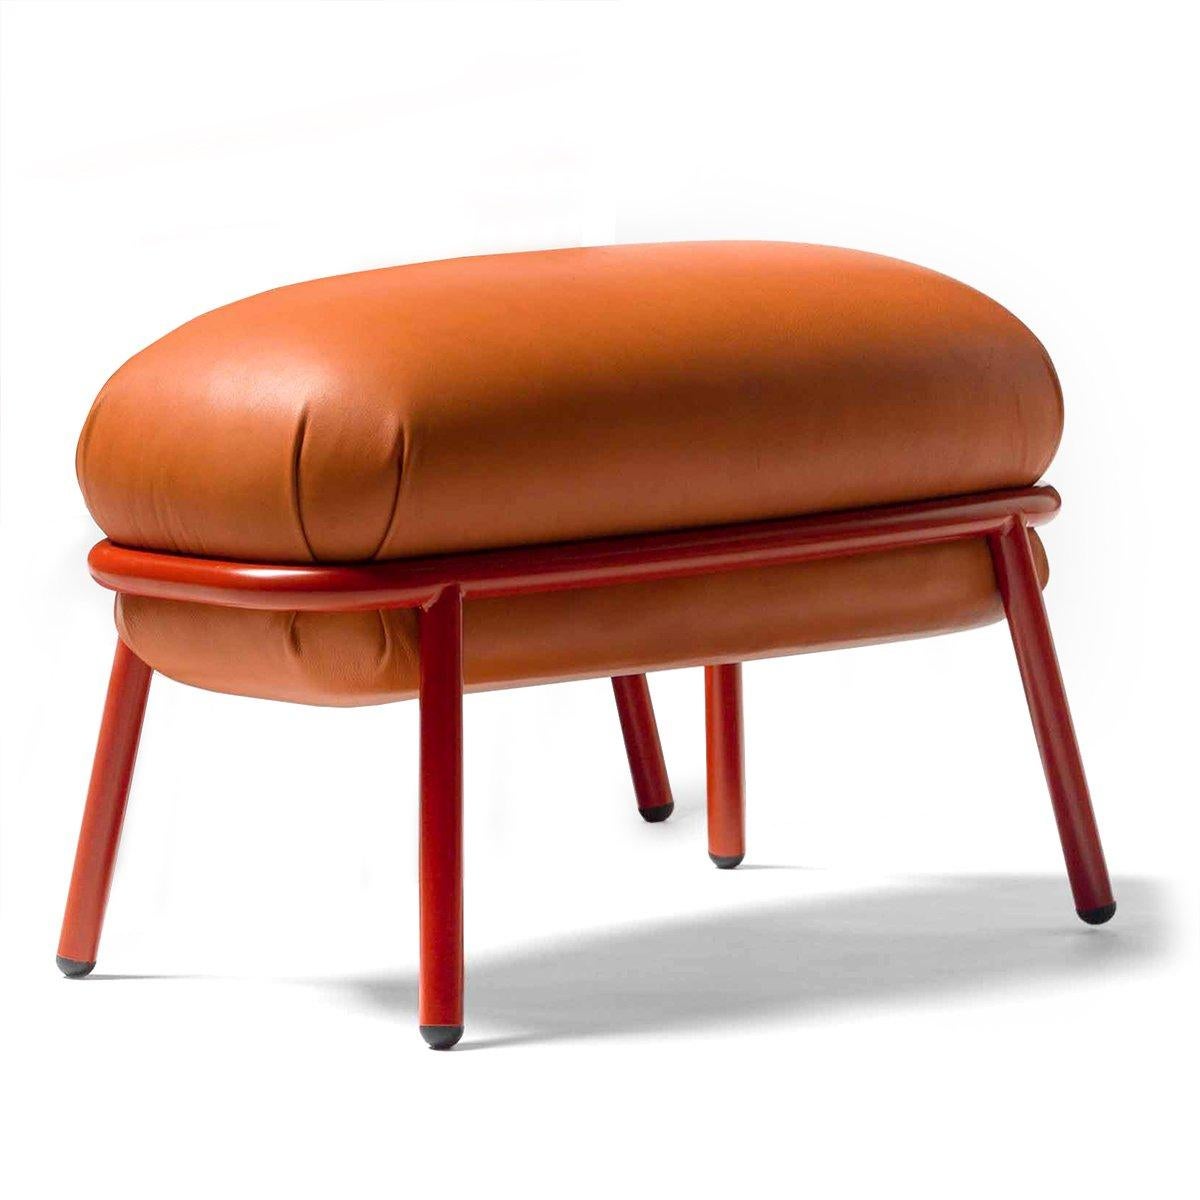 English Grasso Footstool, Designed by Stephen Burks for BD Barcelona Design For Sale